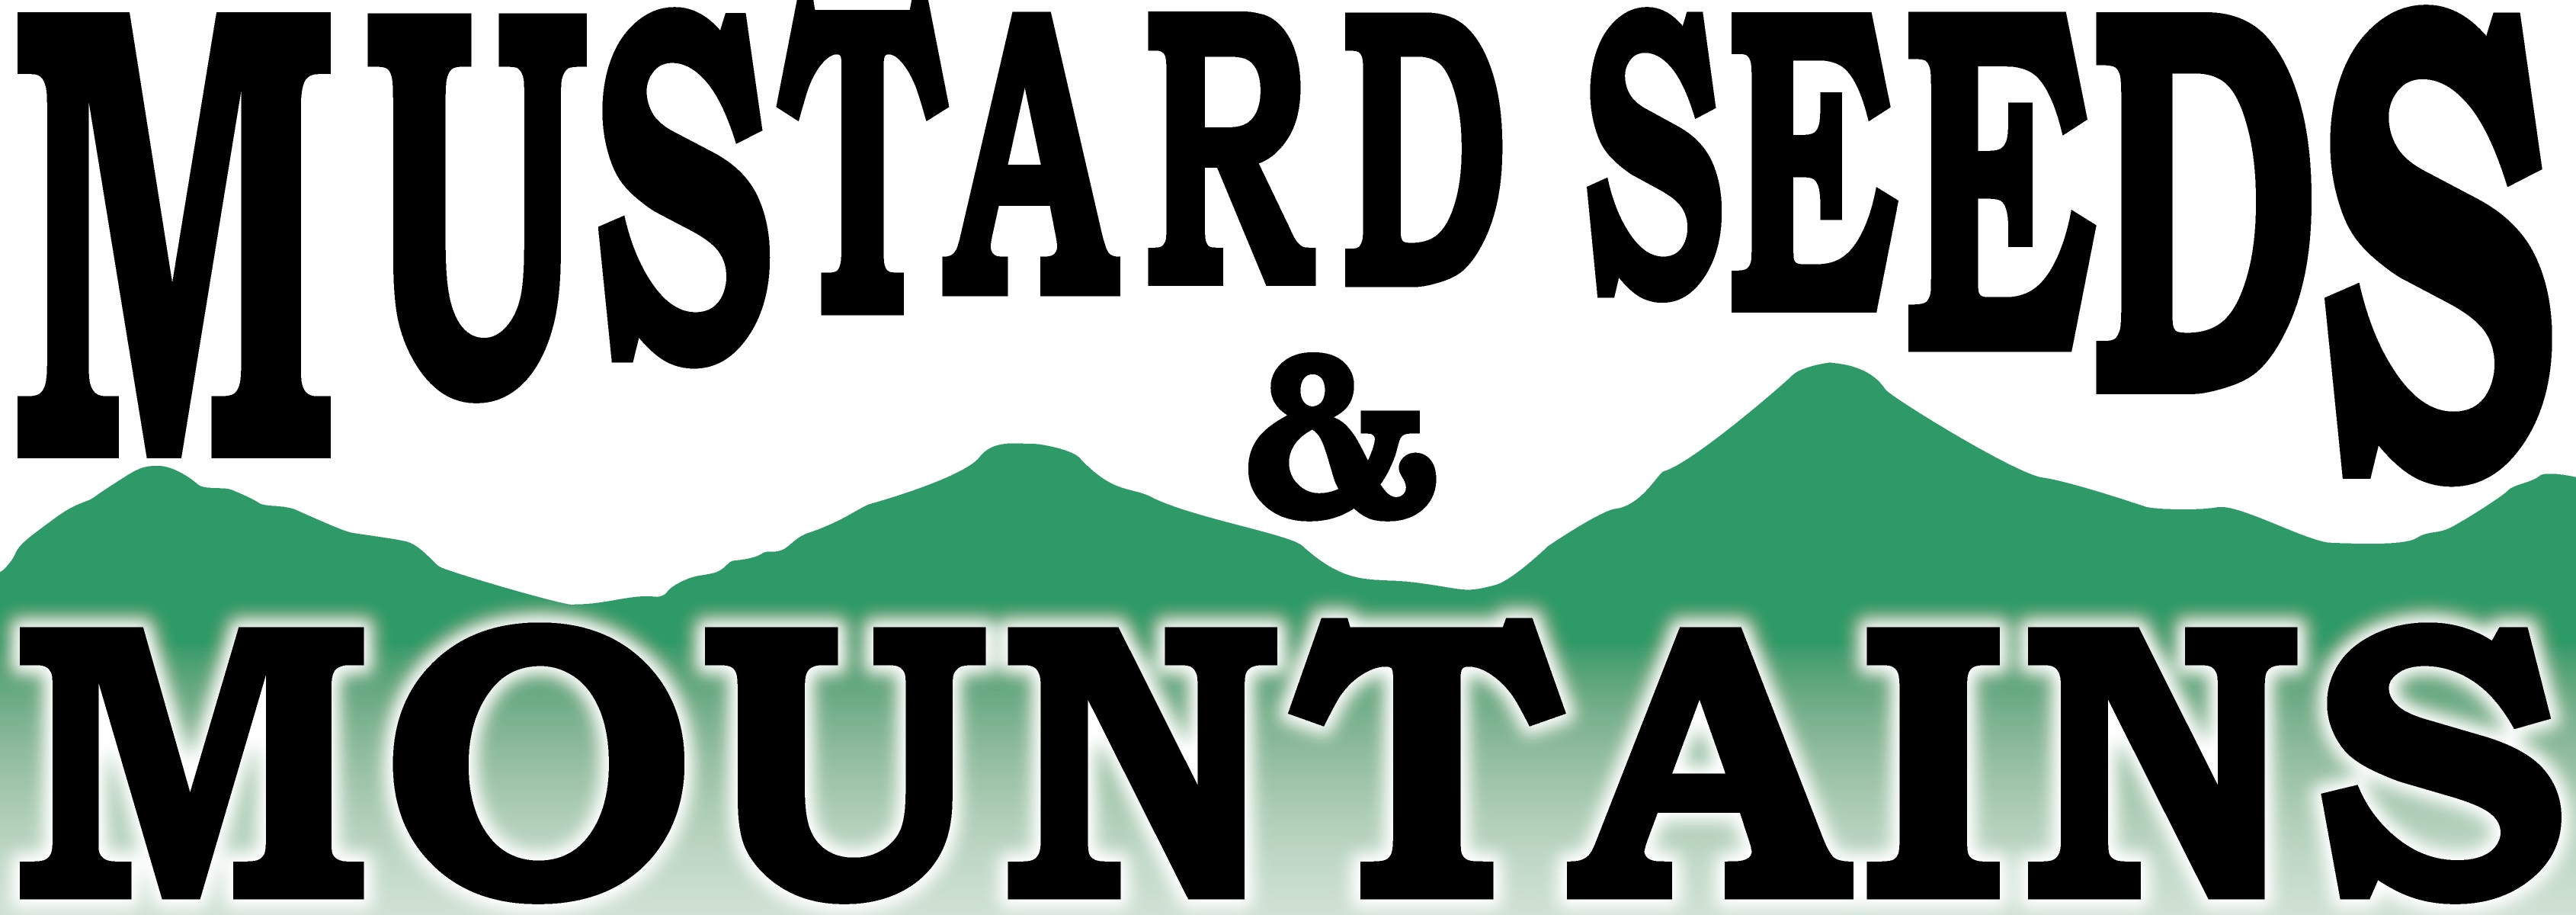 Mustard Seeds & Mountains logo